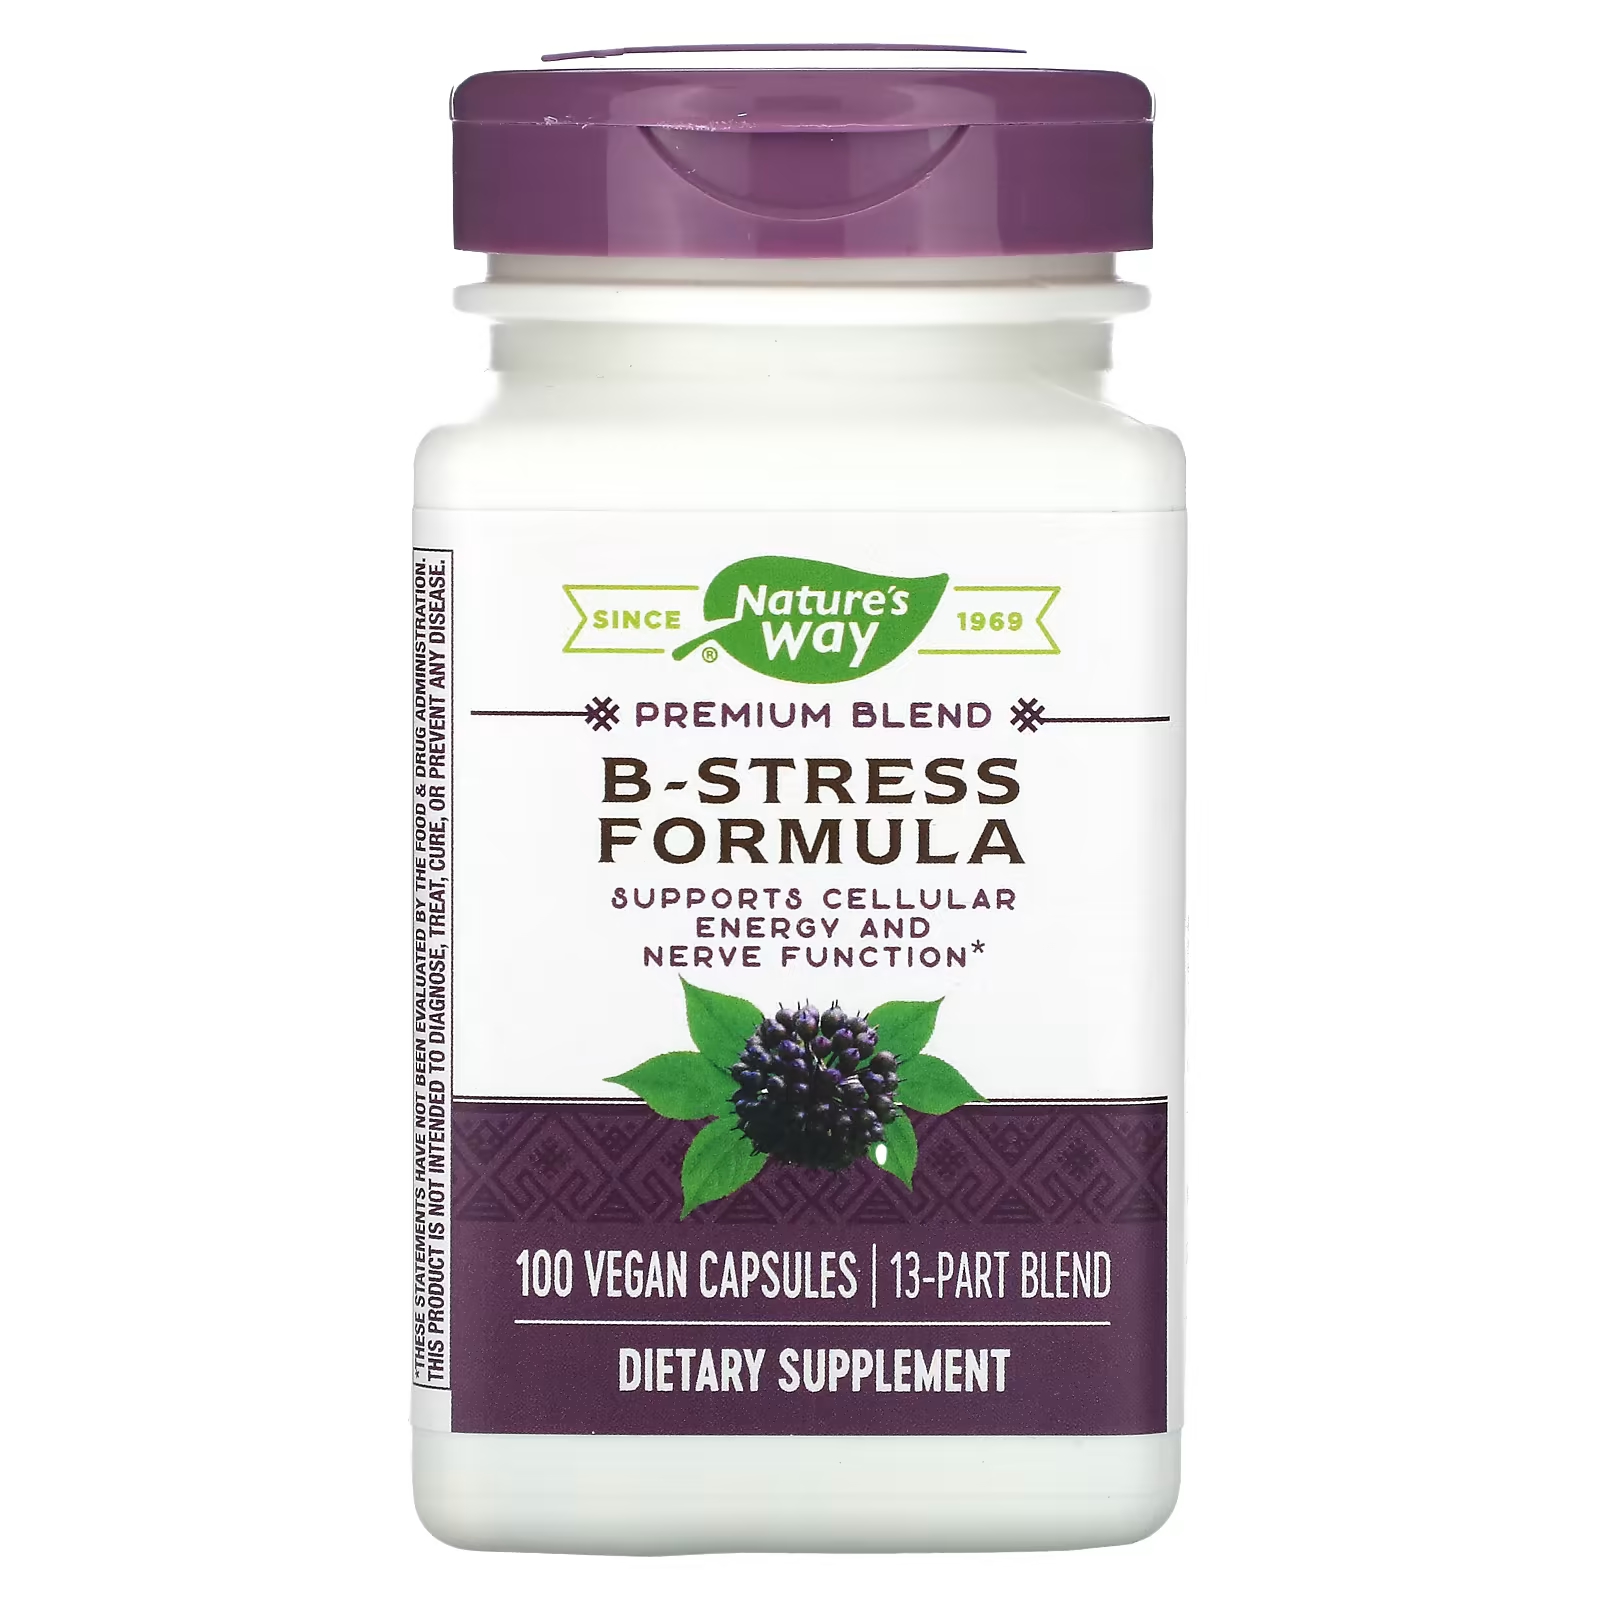 Пищевая добавка Nature's Way Premium Blend B-Stress Formula, 100 веганских капсул b stress formula nature s way 100 капсул